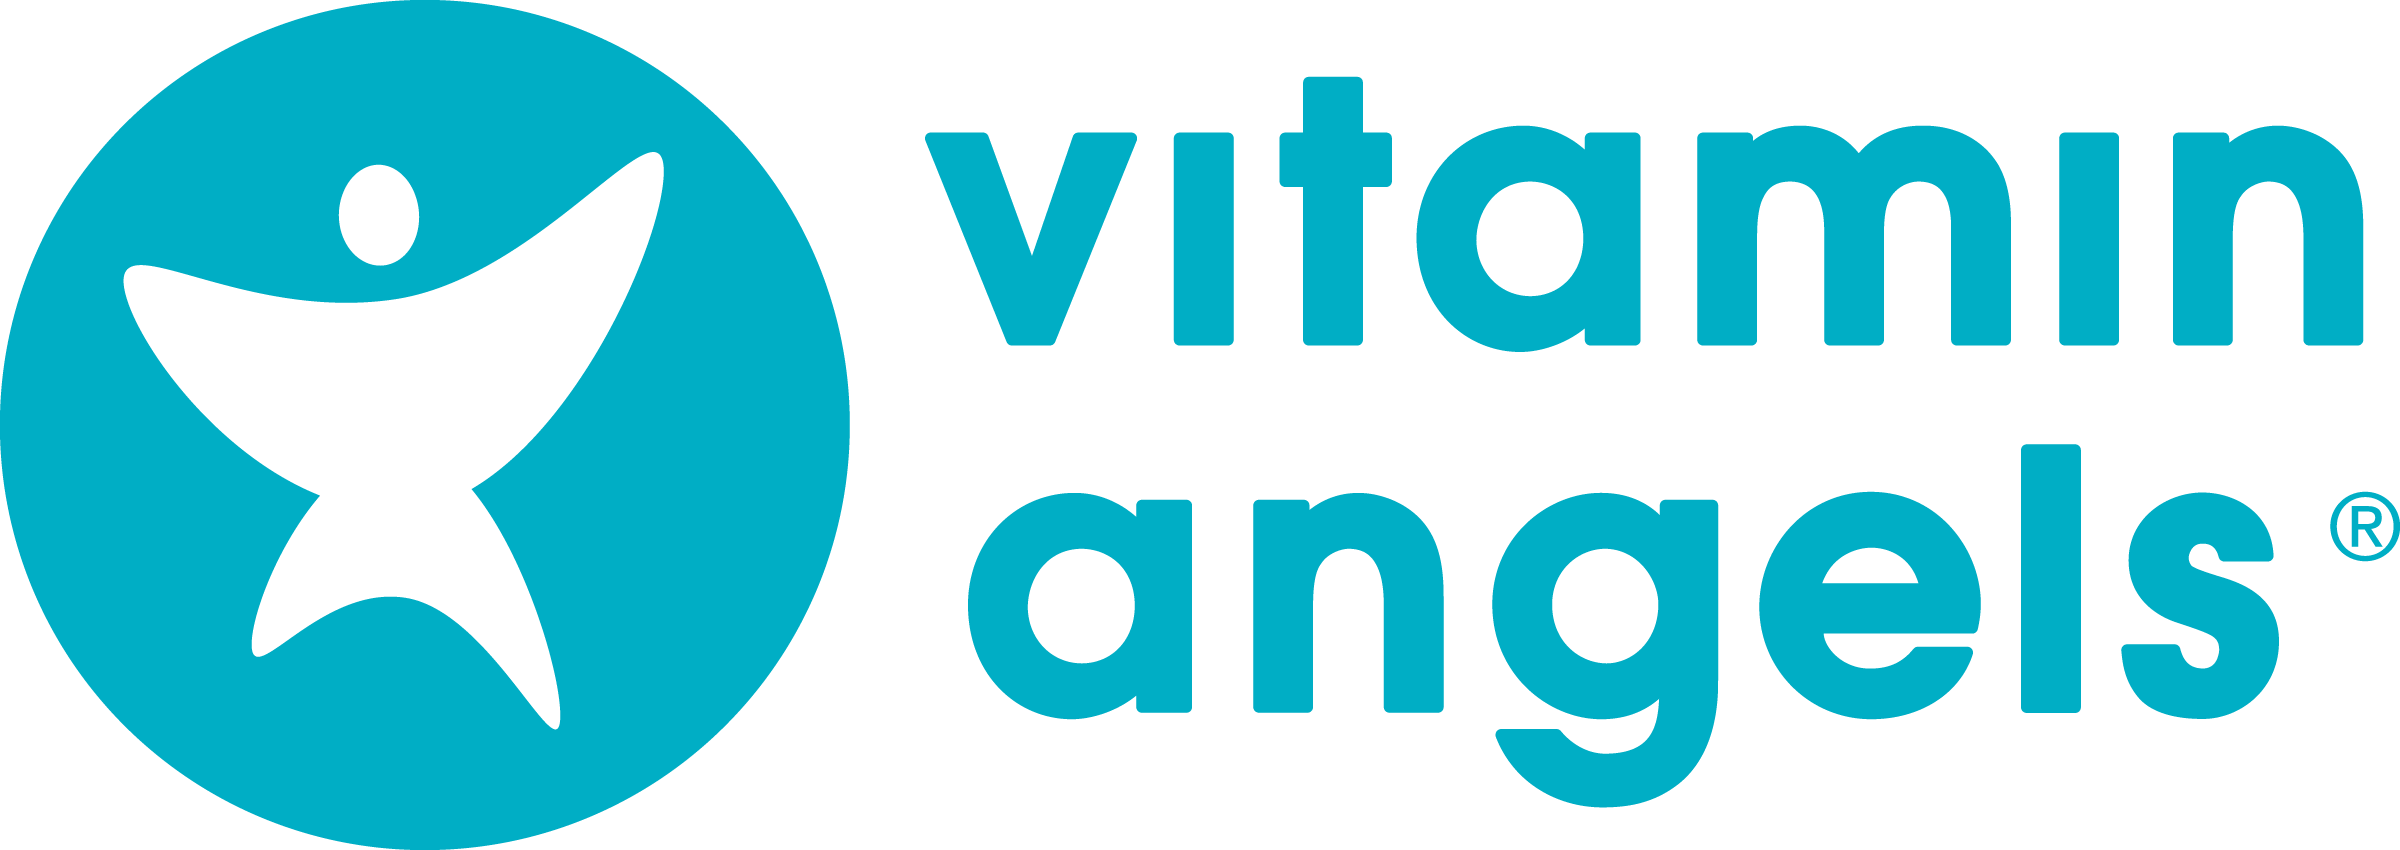 Vitamin Angels (Copy)